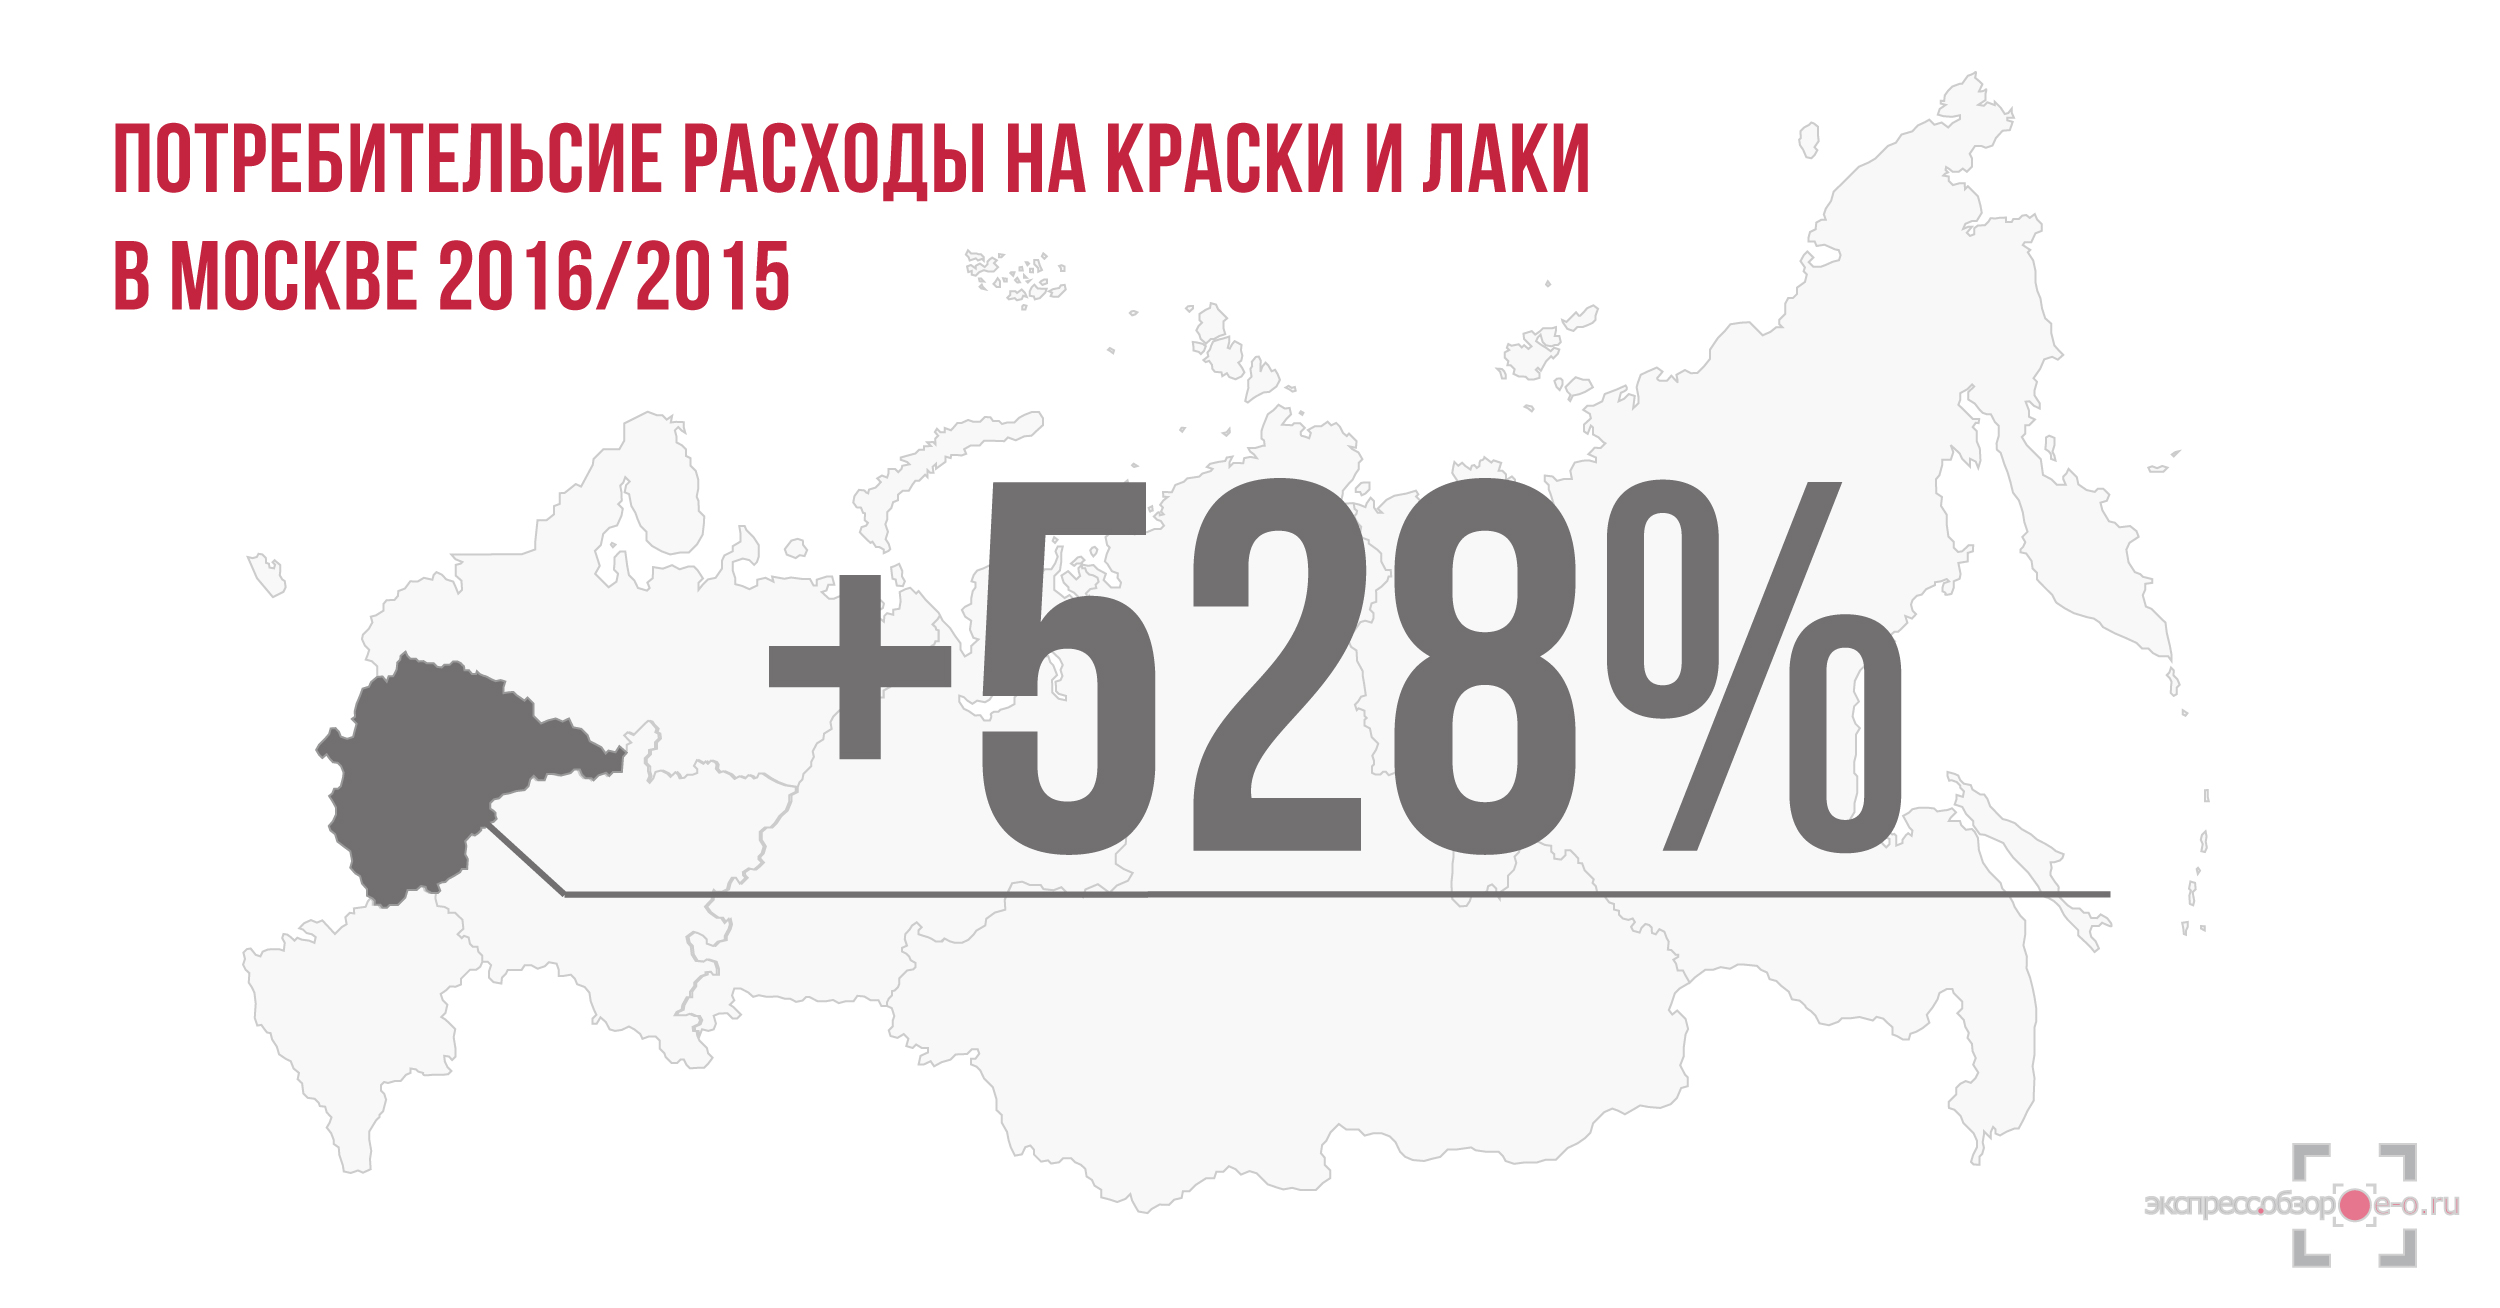 Рынок лаков и красок в России в 2016 году